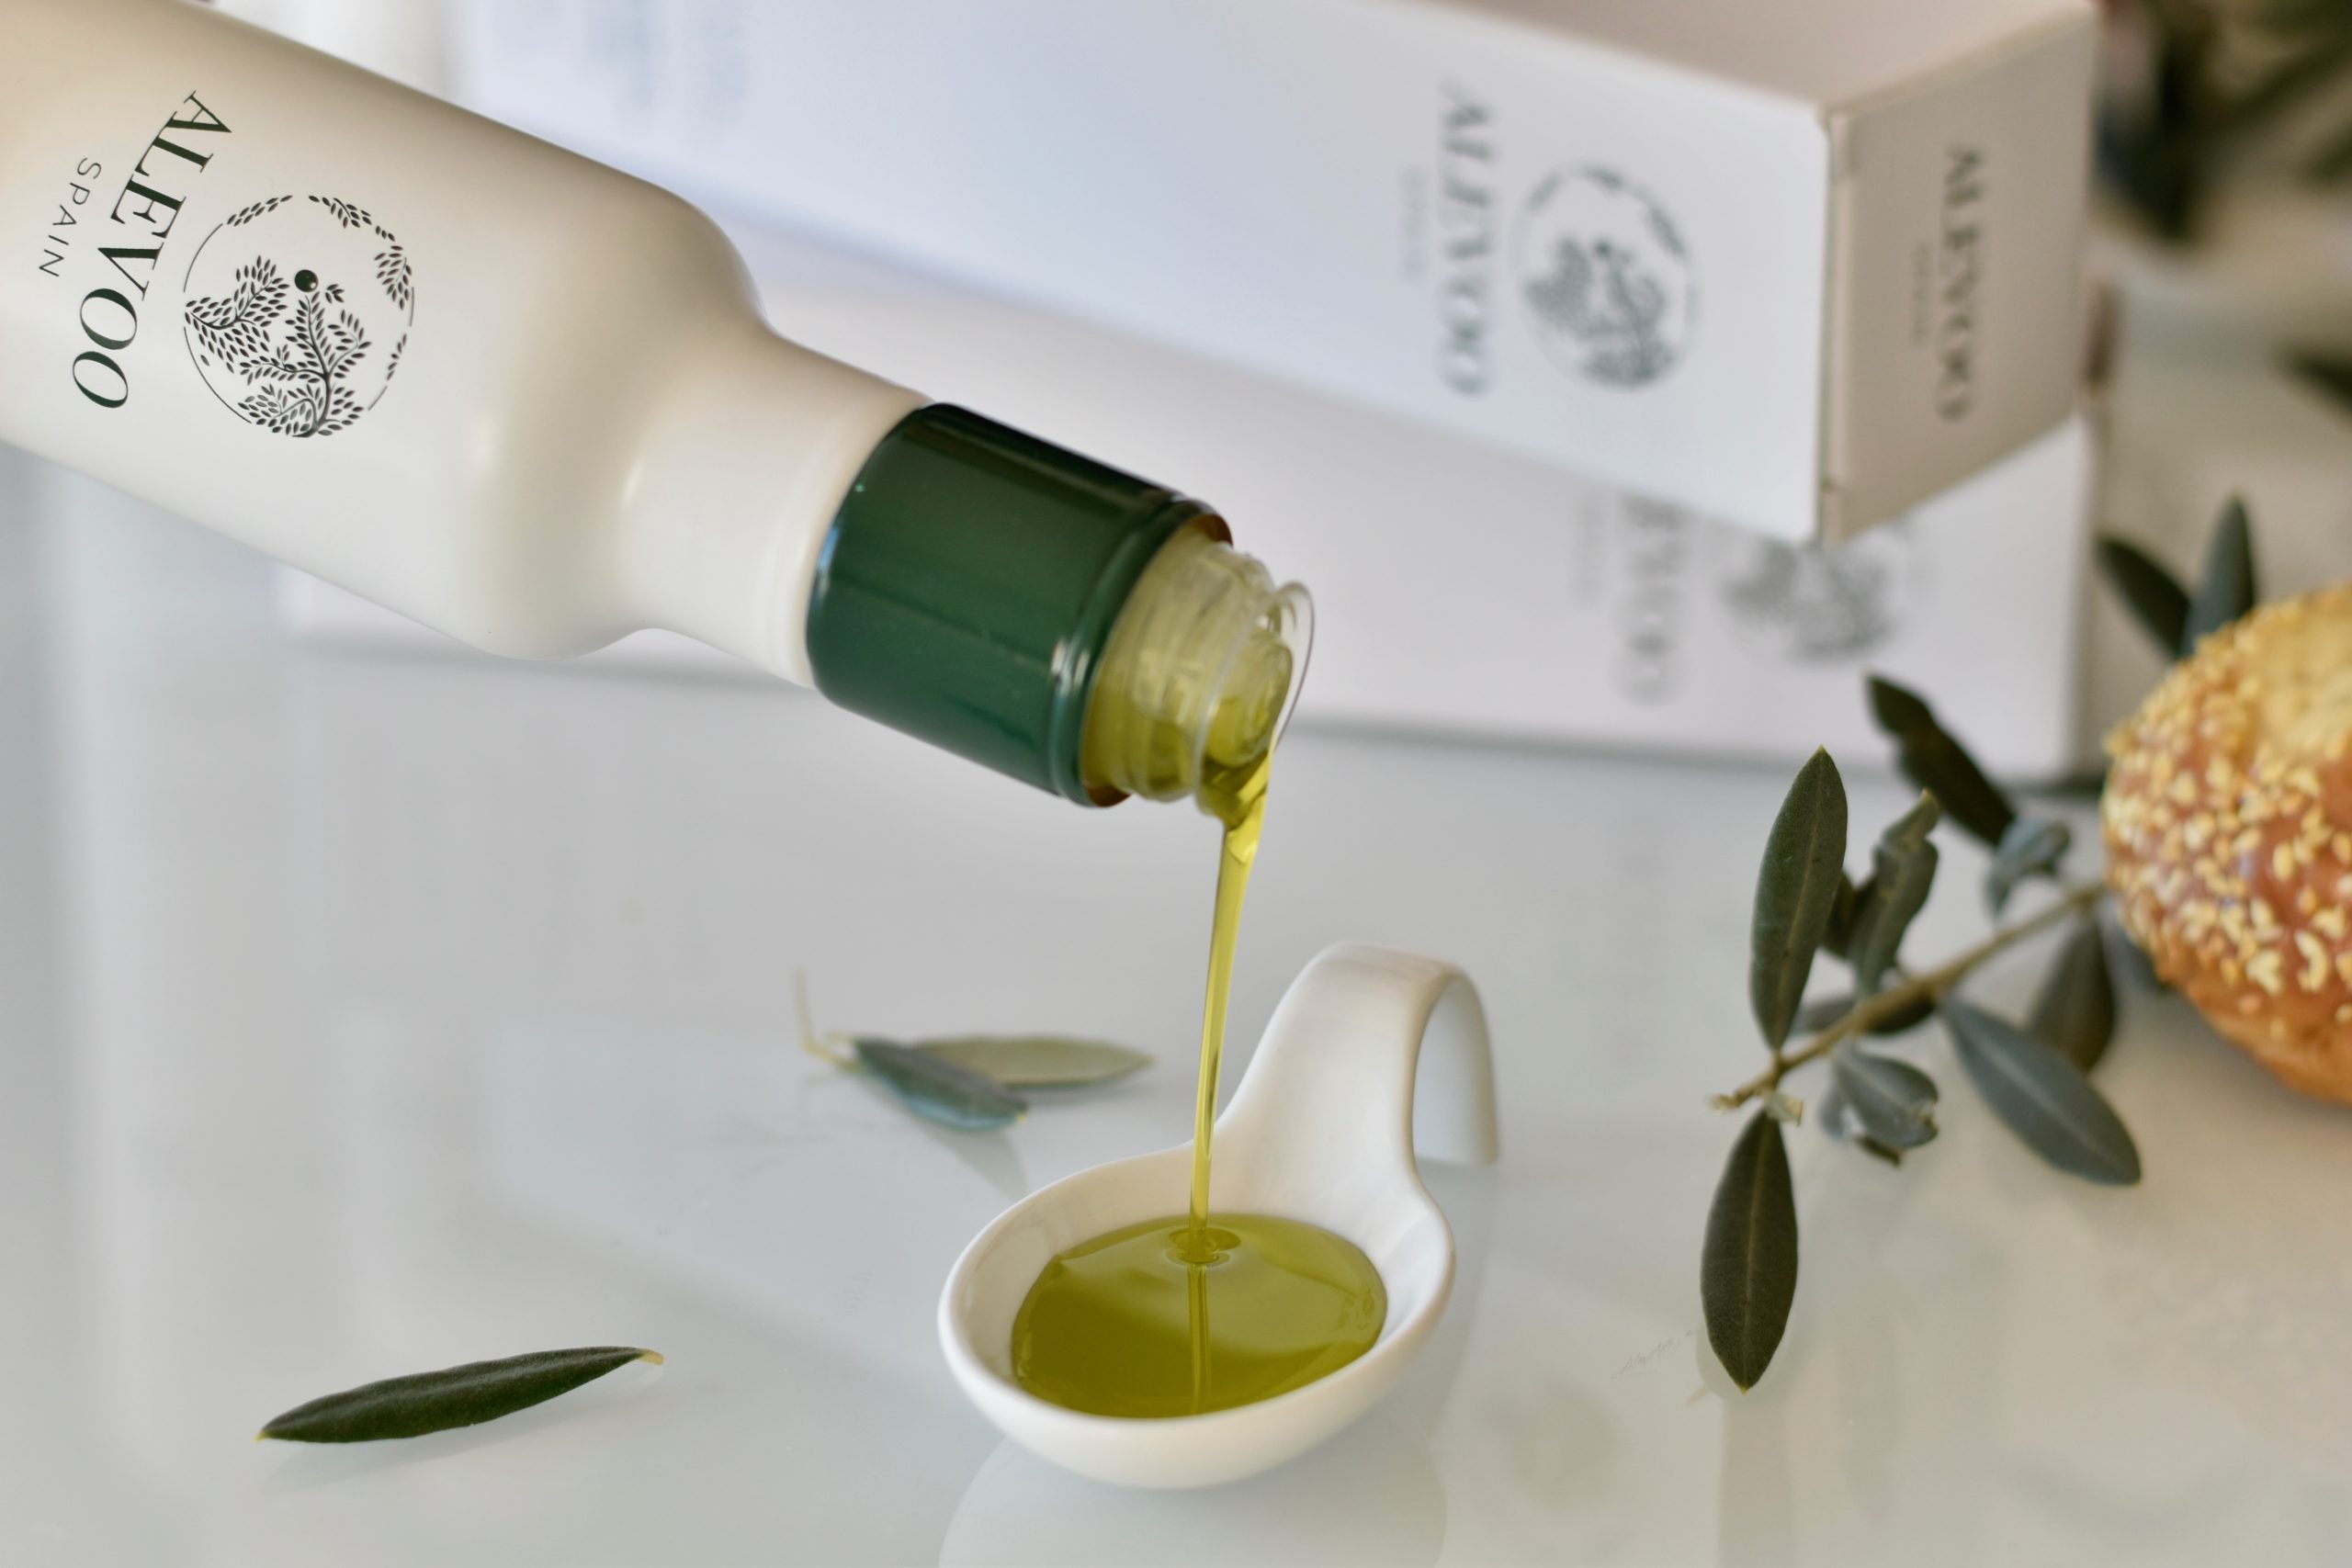 Aceite de oliva virgen extra picual Alevoo